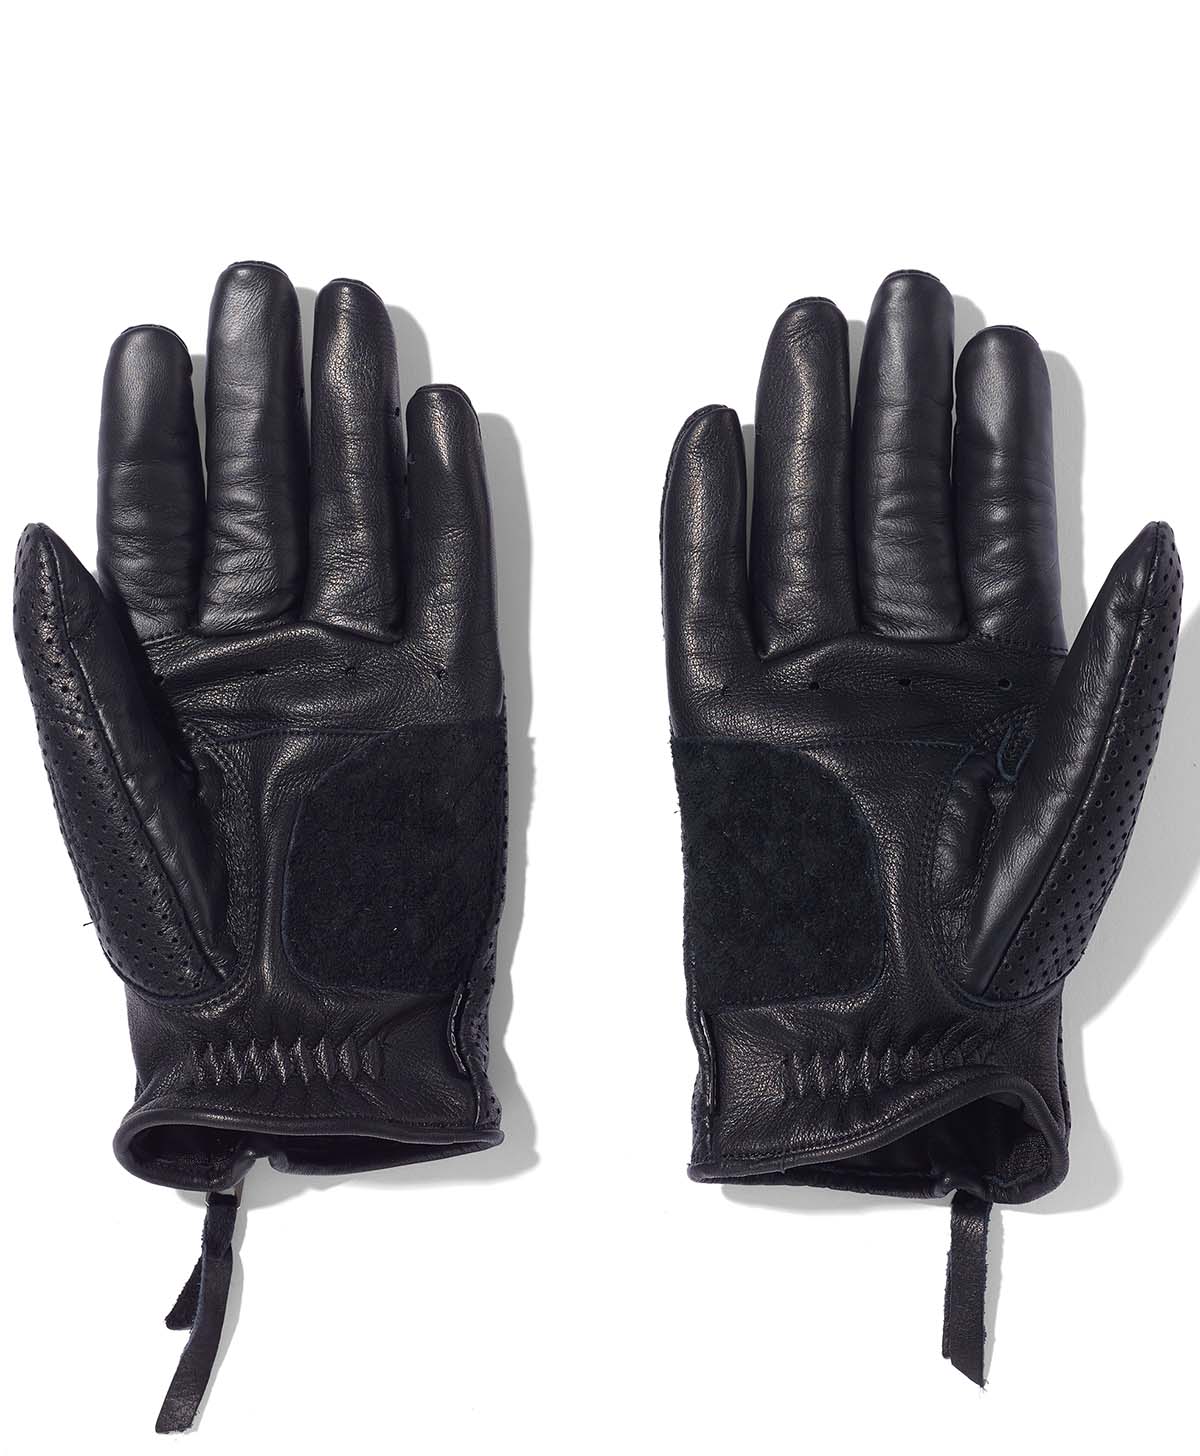 Glove Rox -Pl / Negro (mujer)